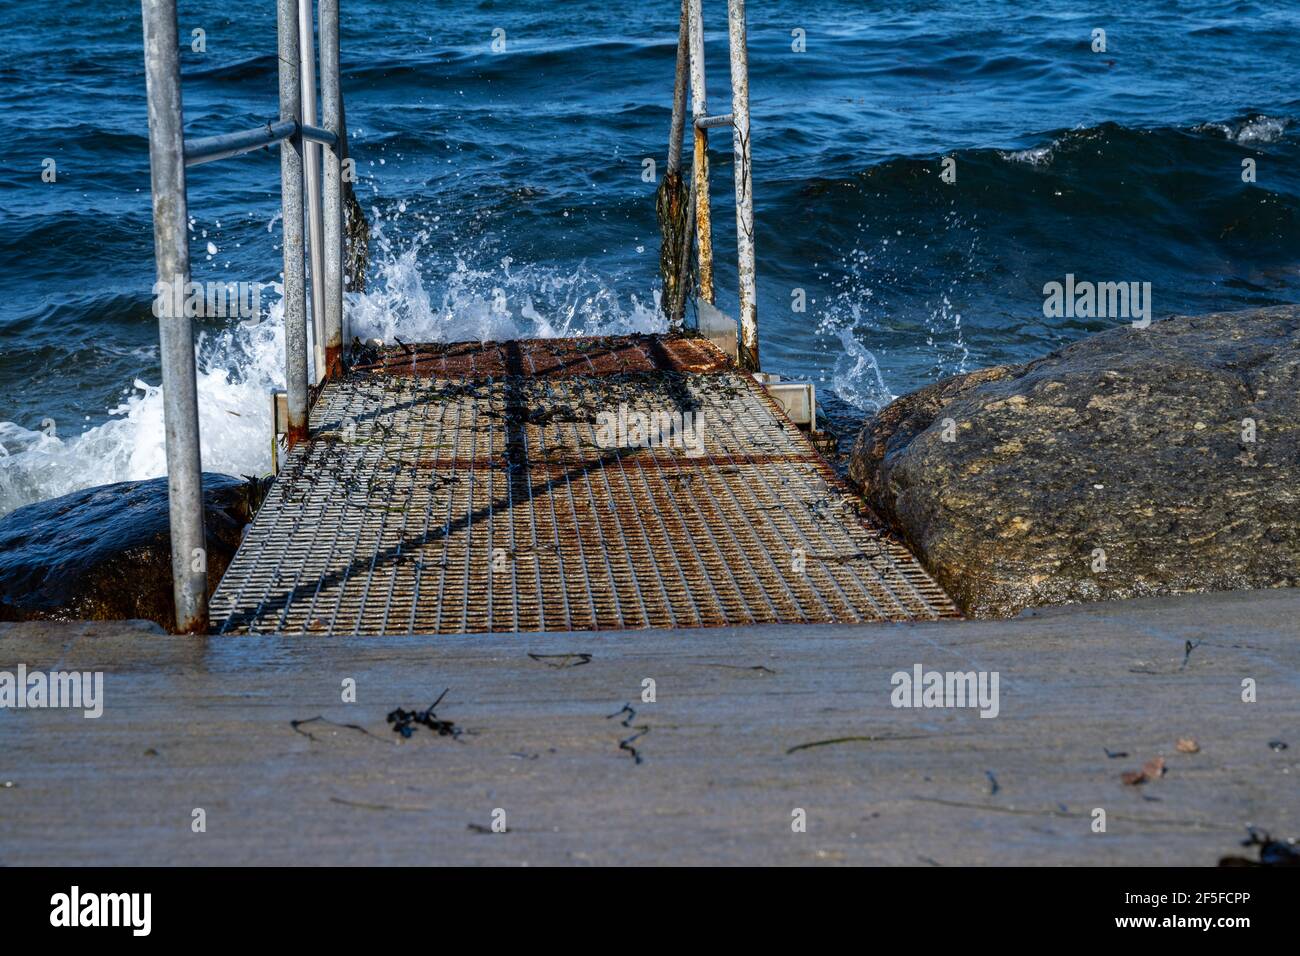 Una plataforma de acero para buceadores. Azul océano en el fondo. Foto de Malmo, sur de Suecia Foto de stock